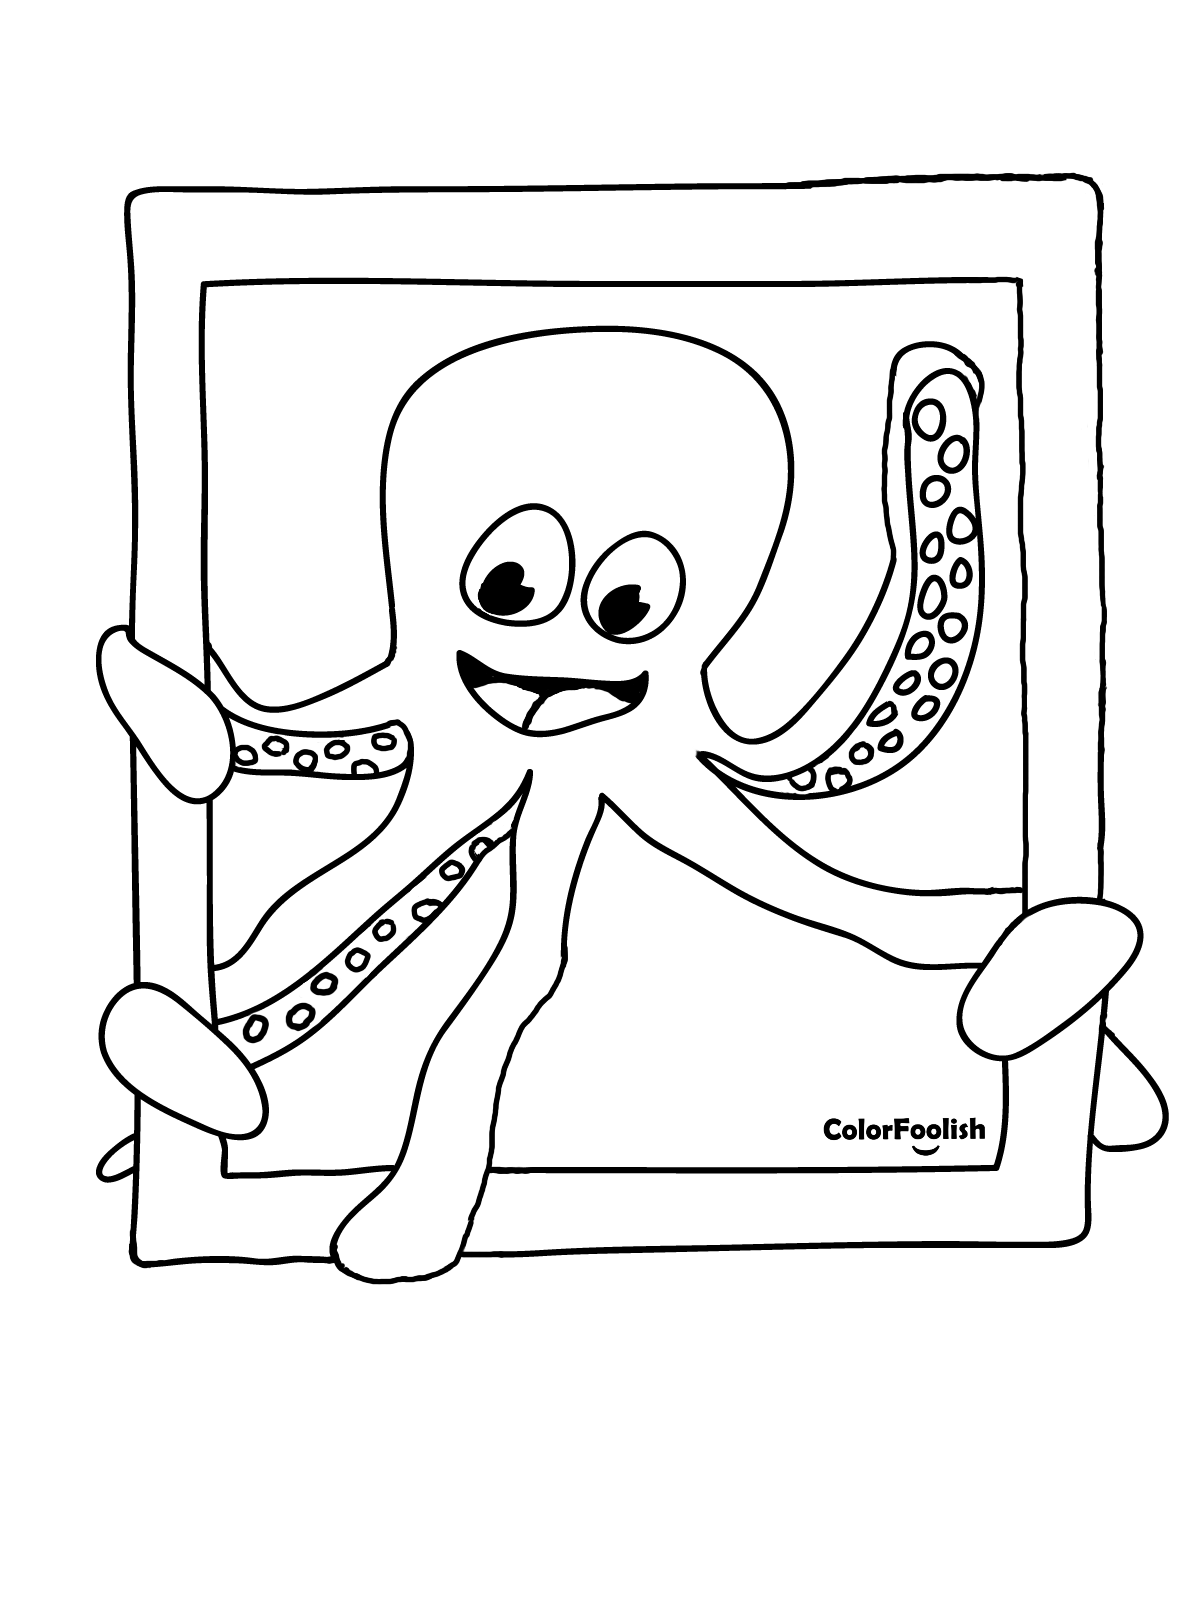 Dibujo para colorear de un calamar ondeando en un marco